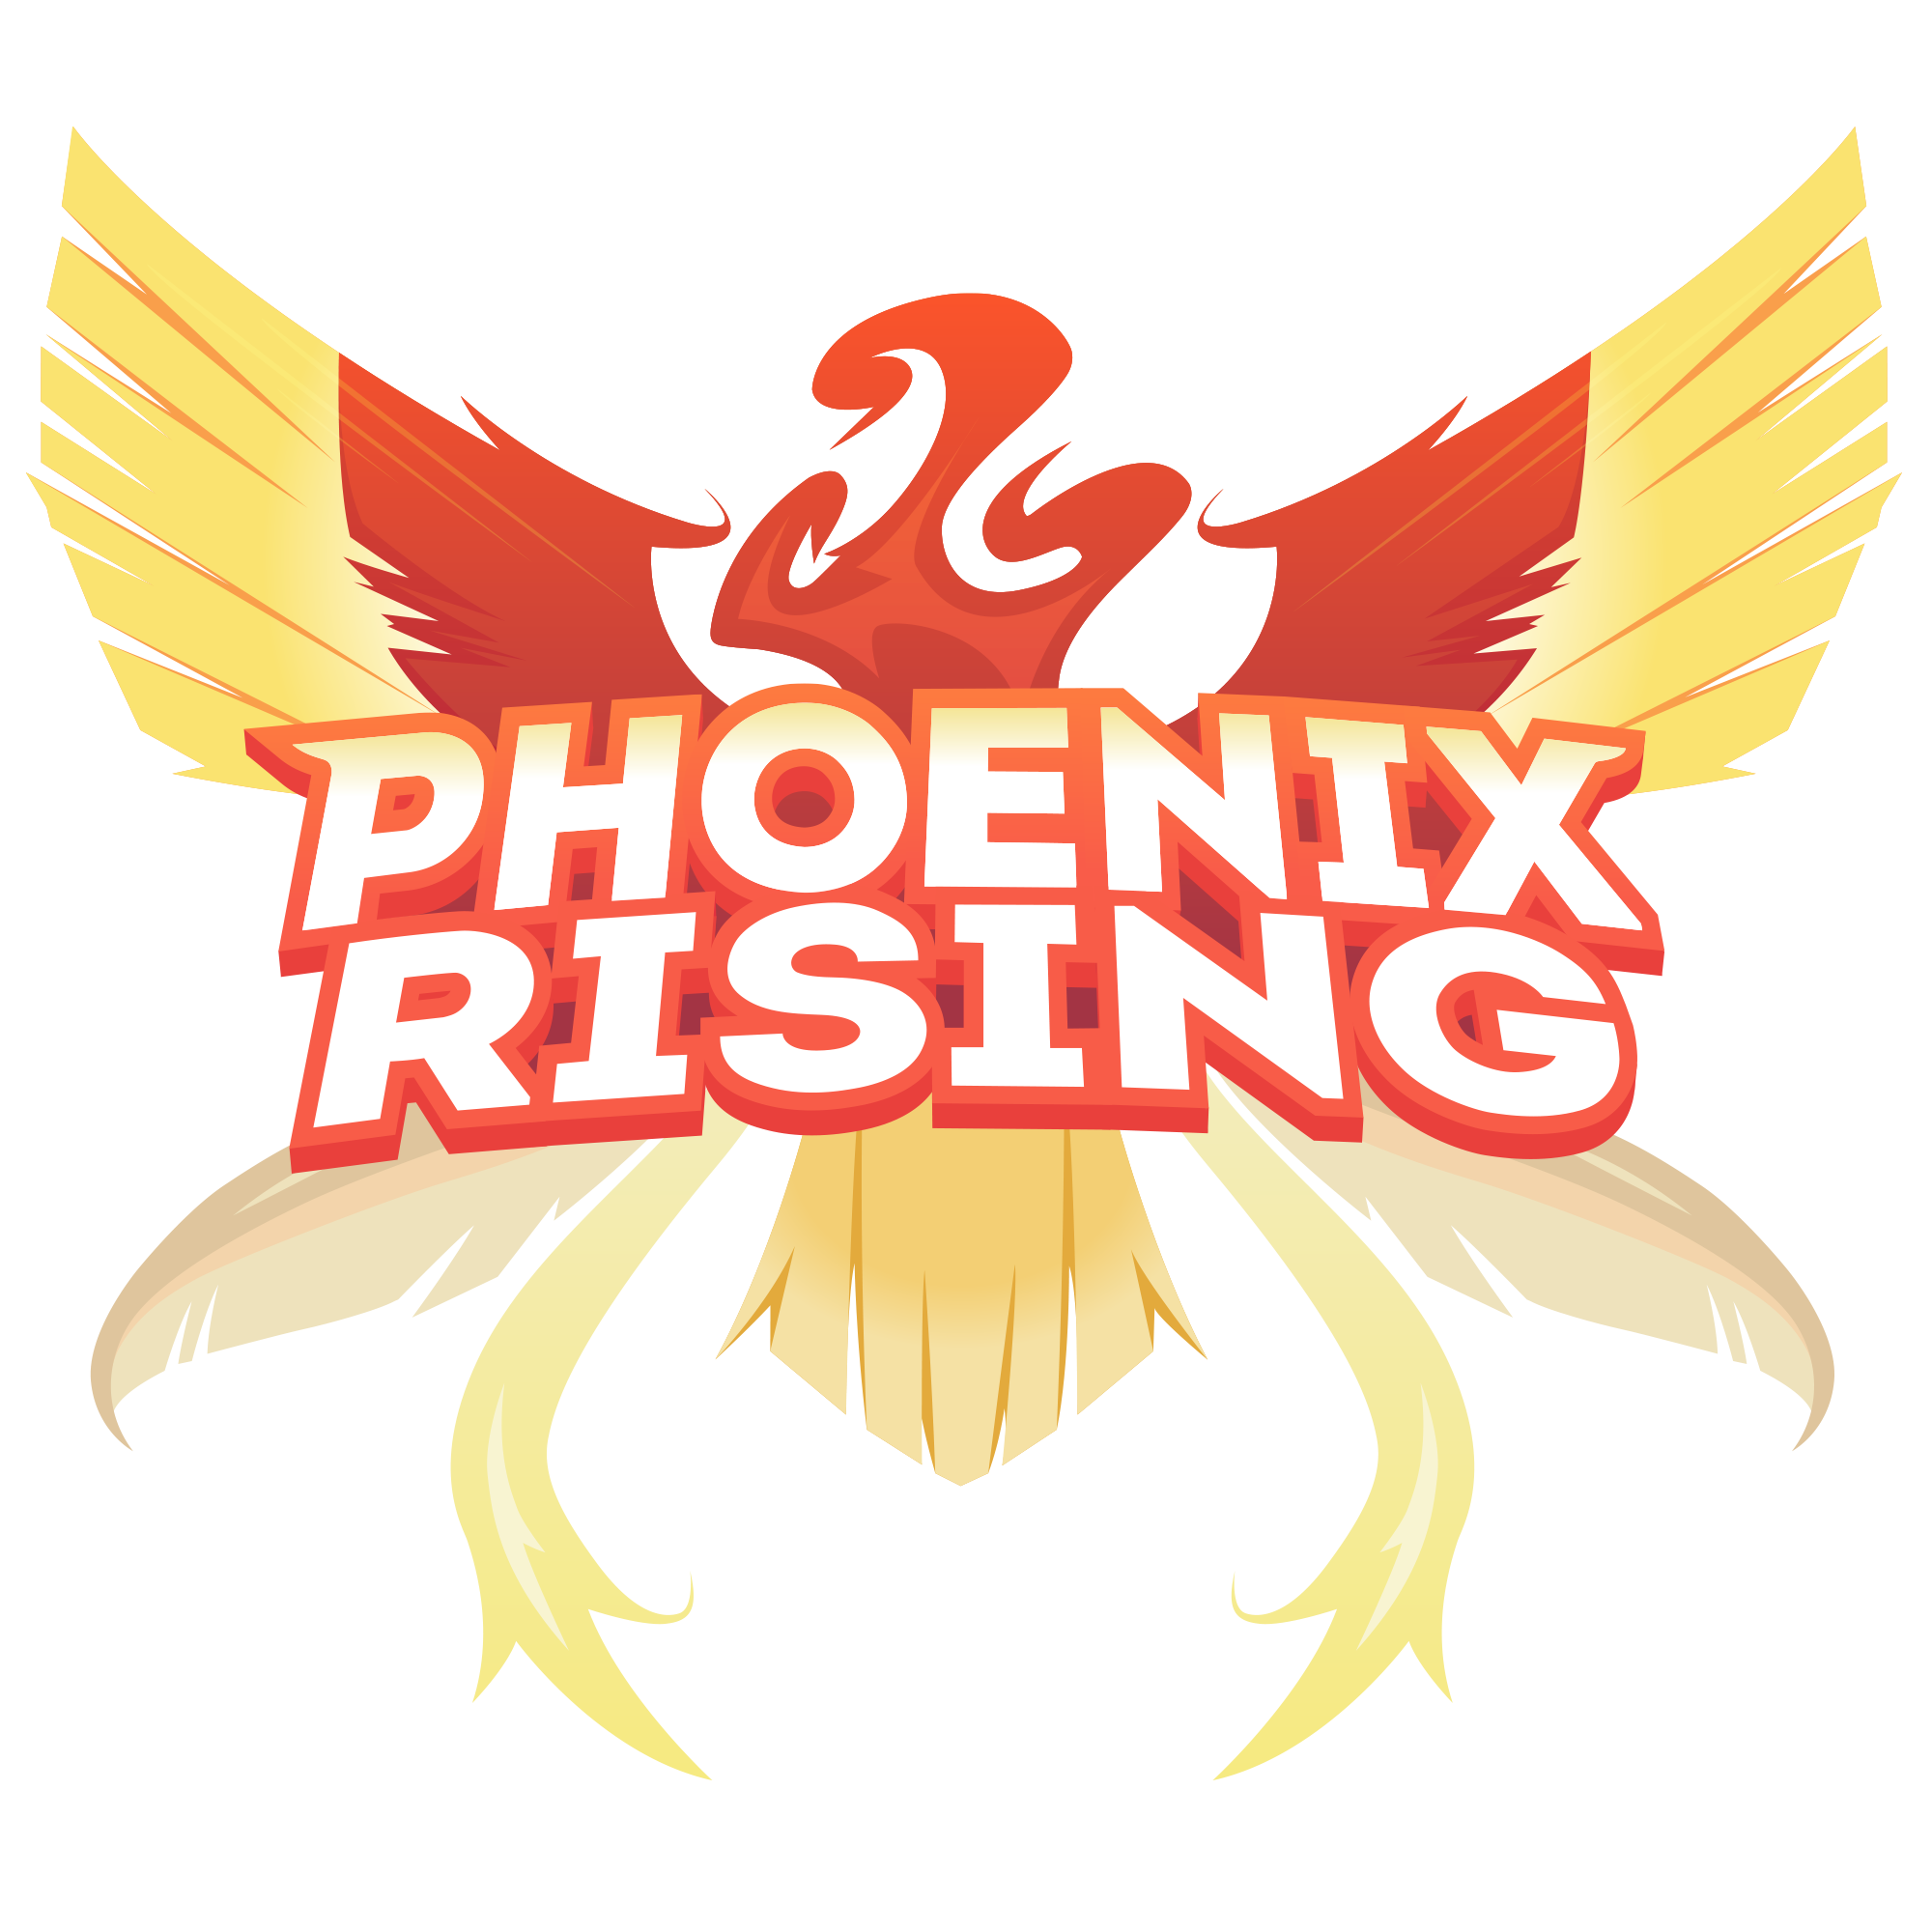 Phoenix rising pictures